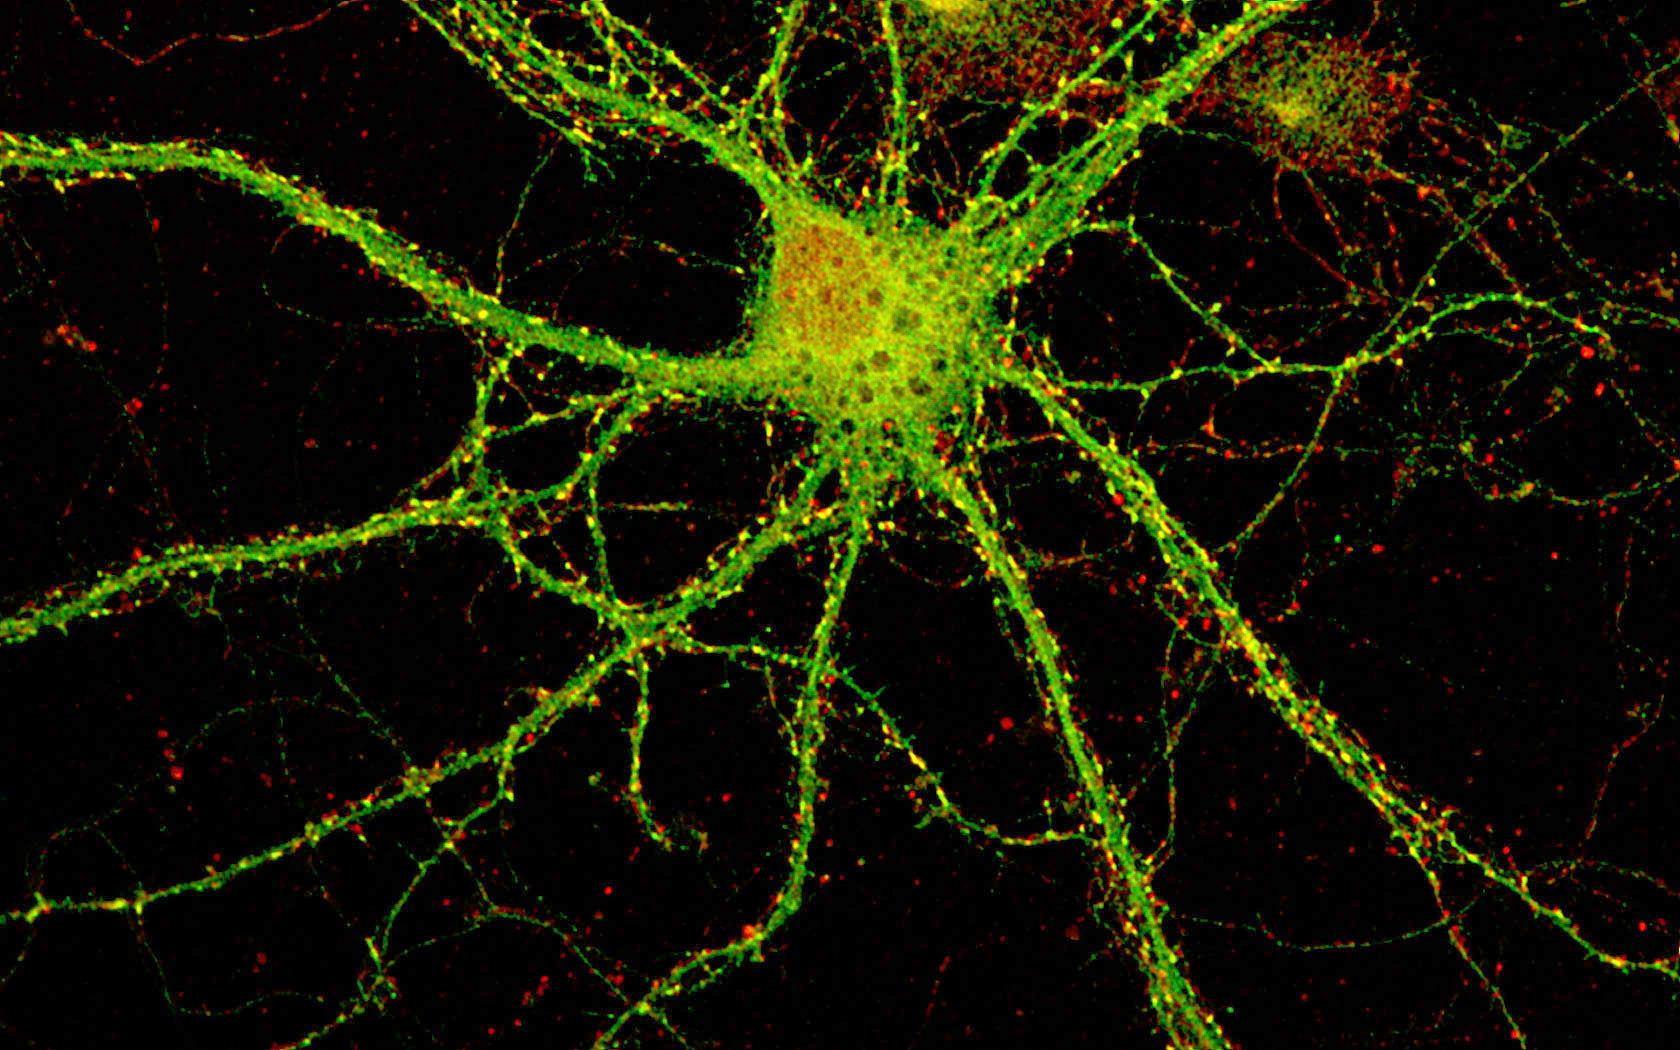 A single neuron